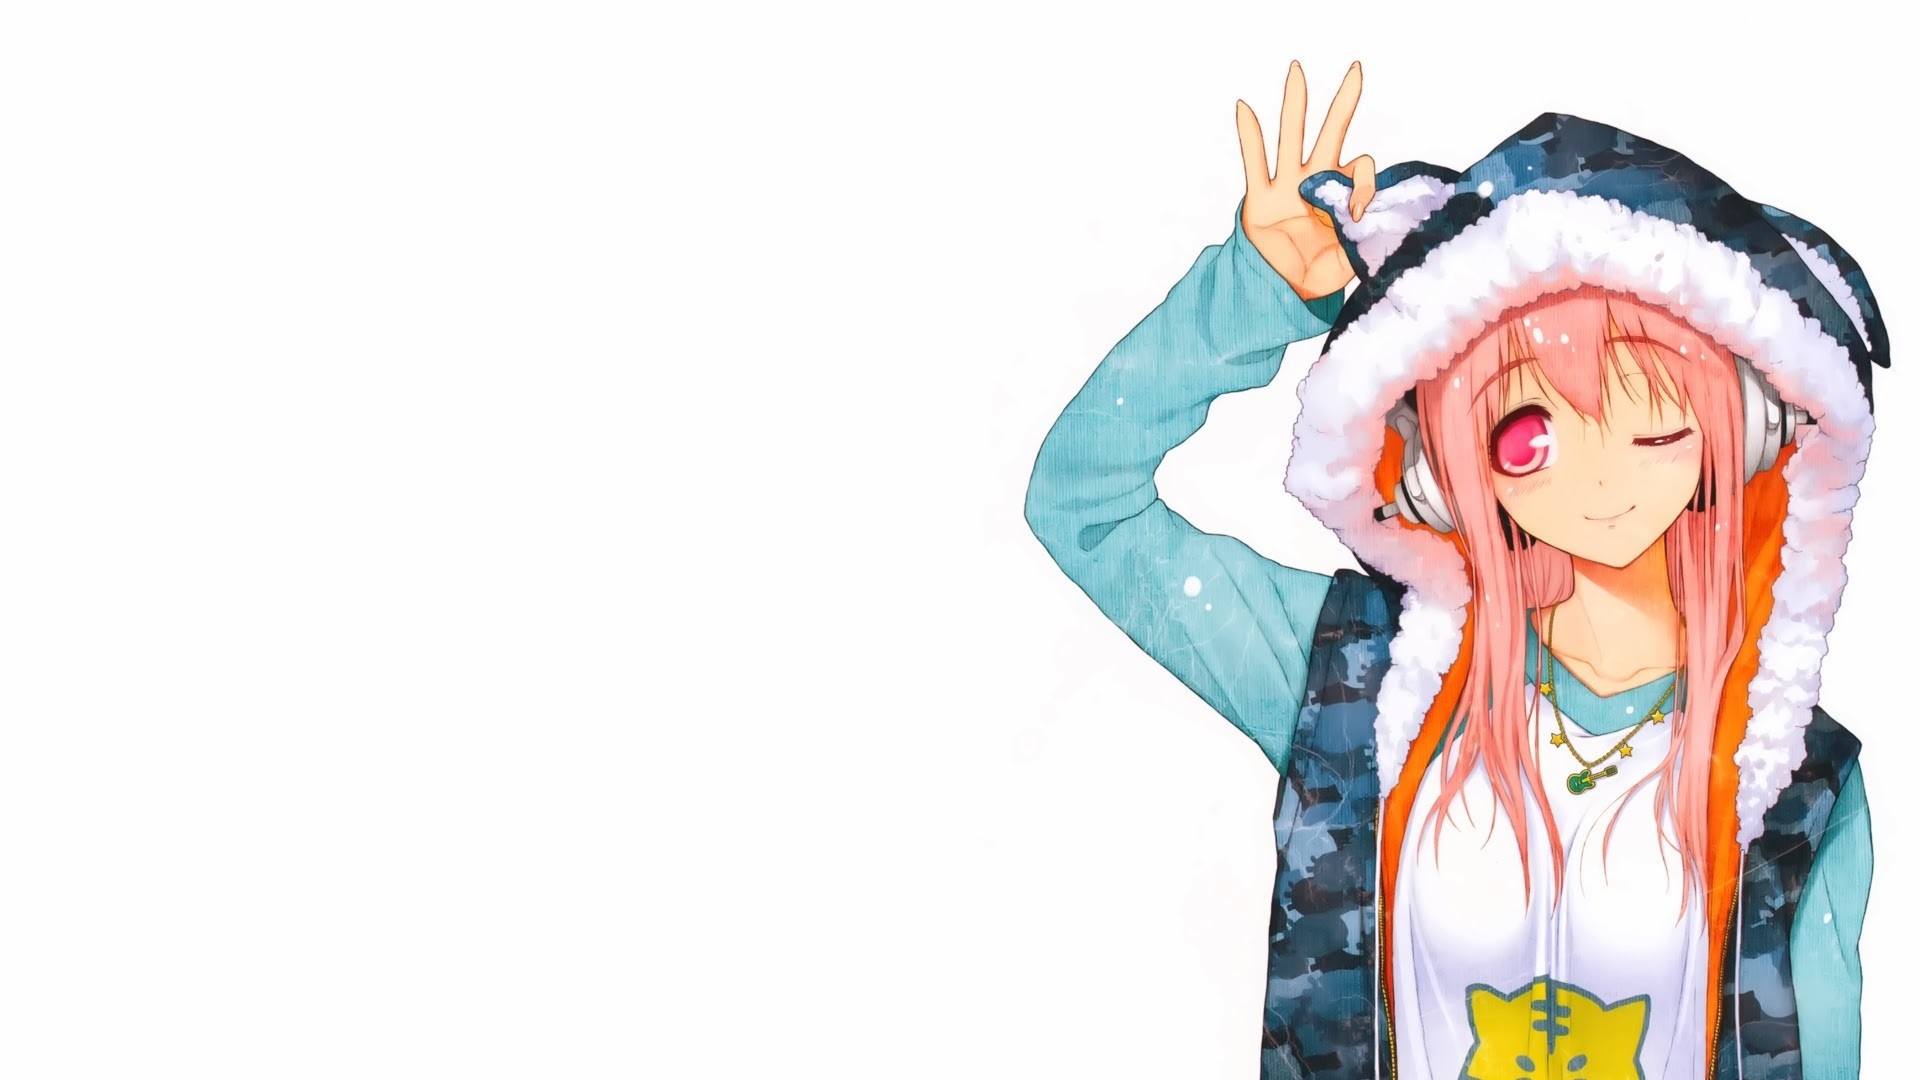 hinh nen anime cho desktop 13 - wallpaper free download